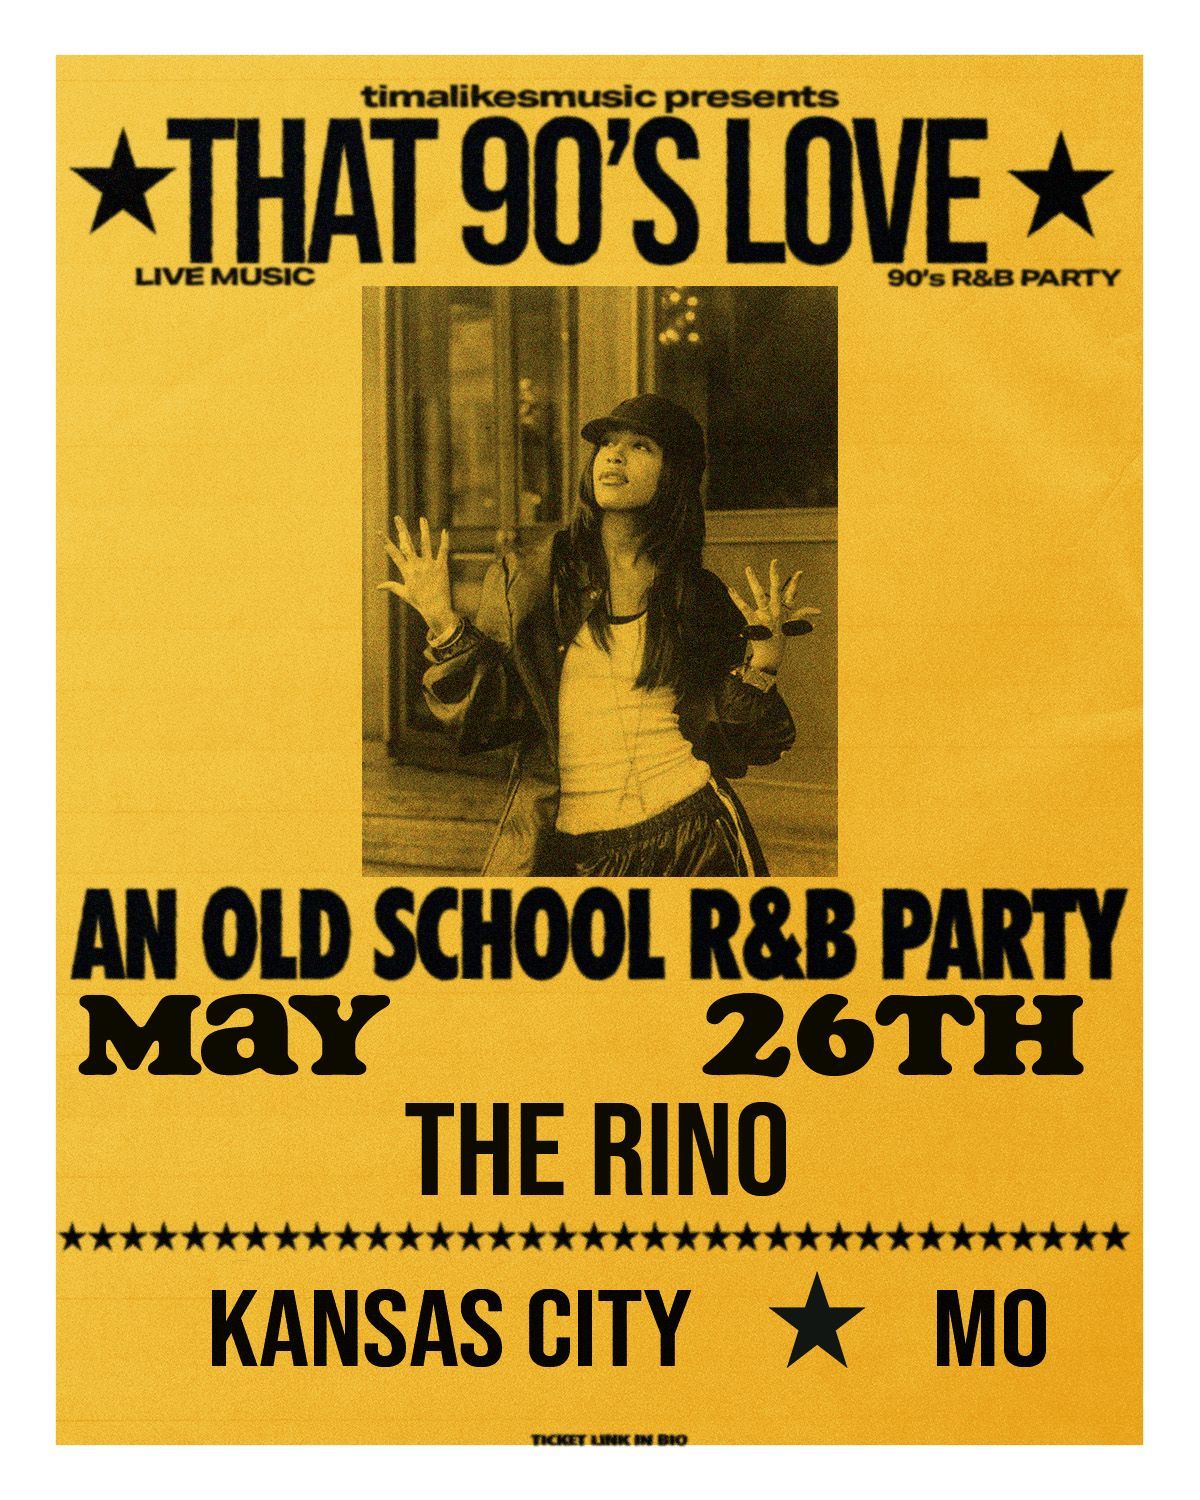 TimaLikesMusic: That 90's Love at The Rino